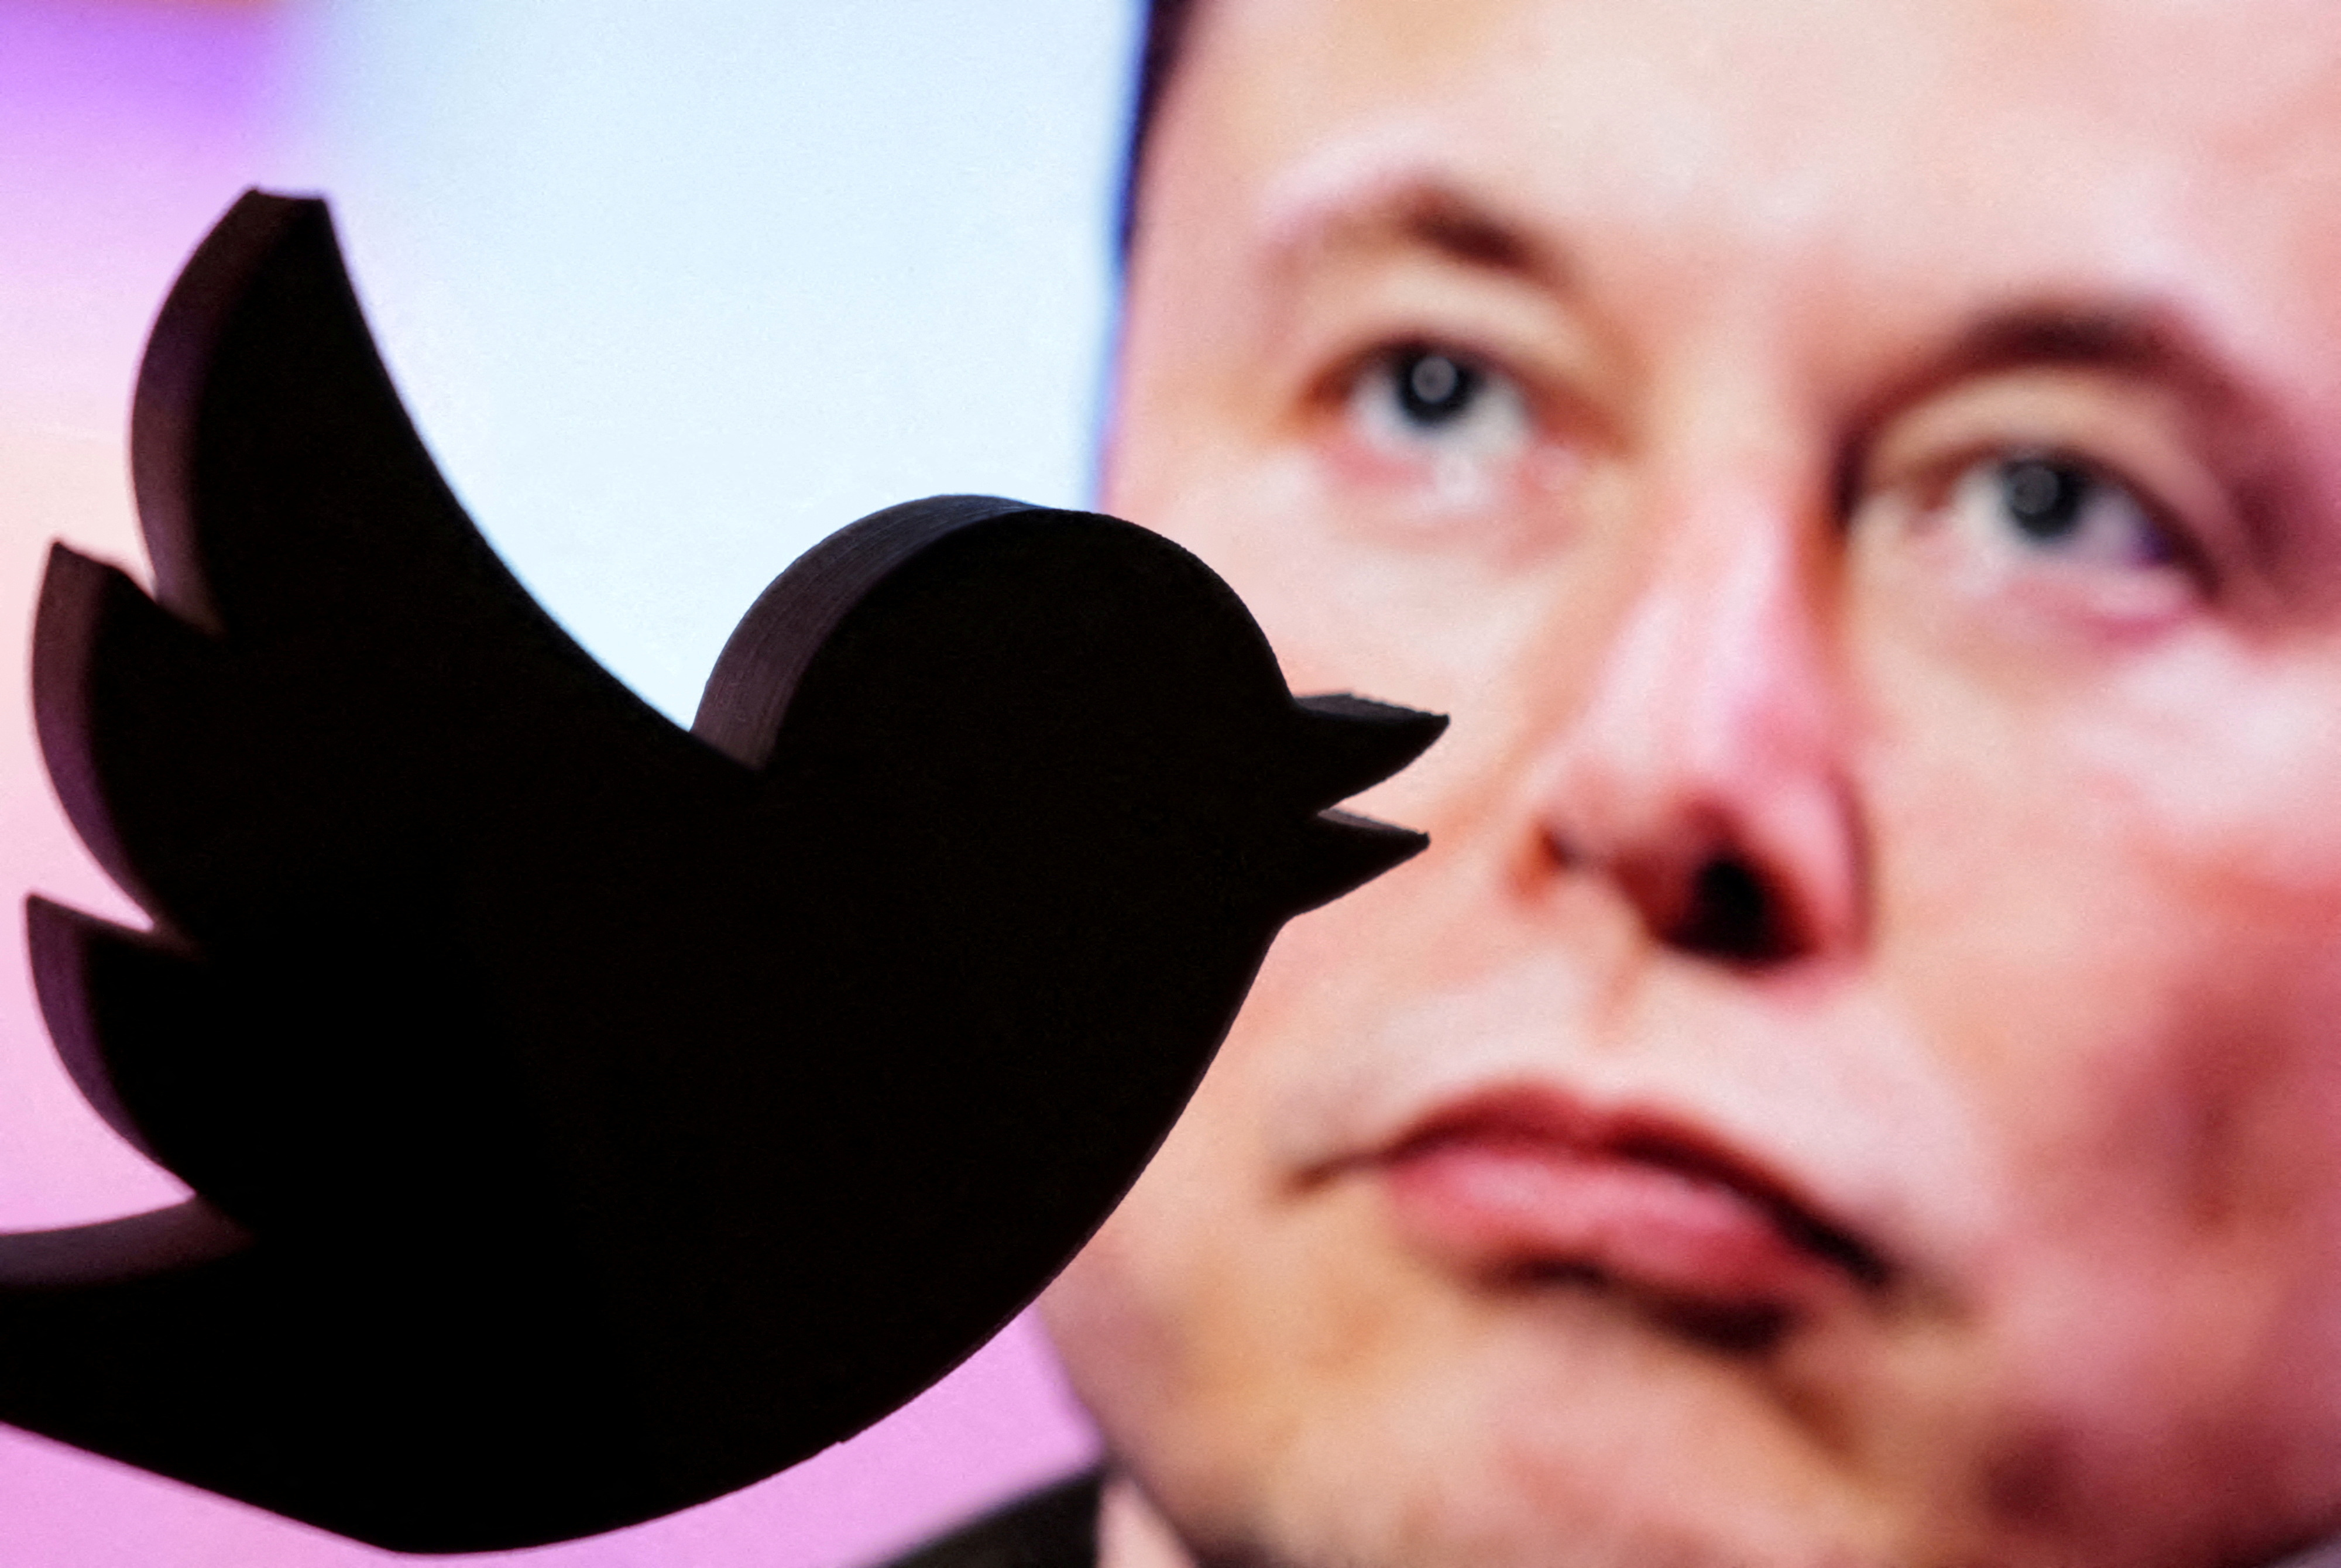 Esta aseveración se da un día después de que el nuevo Director General de Twitter, Elon Musk, afirmara que expondría cómo Twitter se involucró en la “supresión de la libertad de expresión” en el período previo a las elecciones de 2020. (REUTERS)